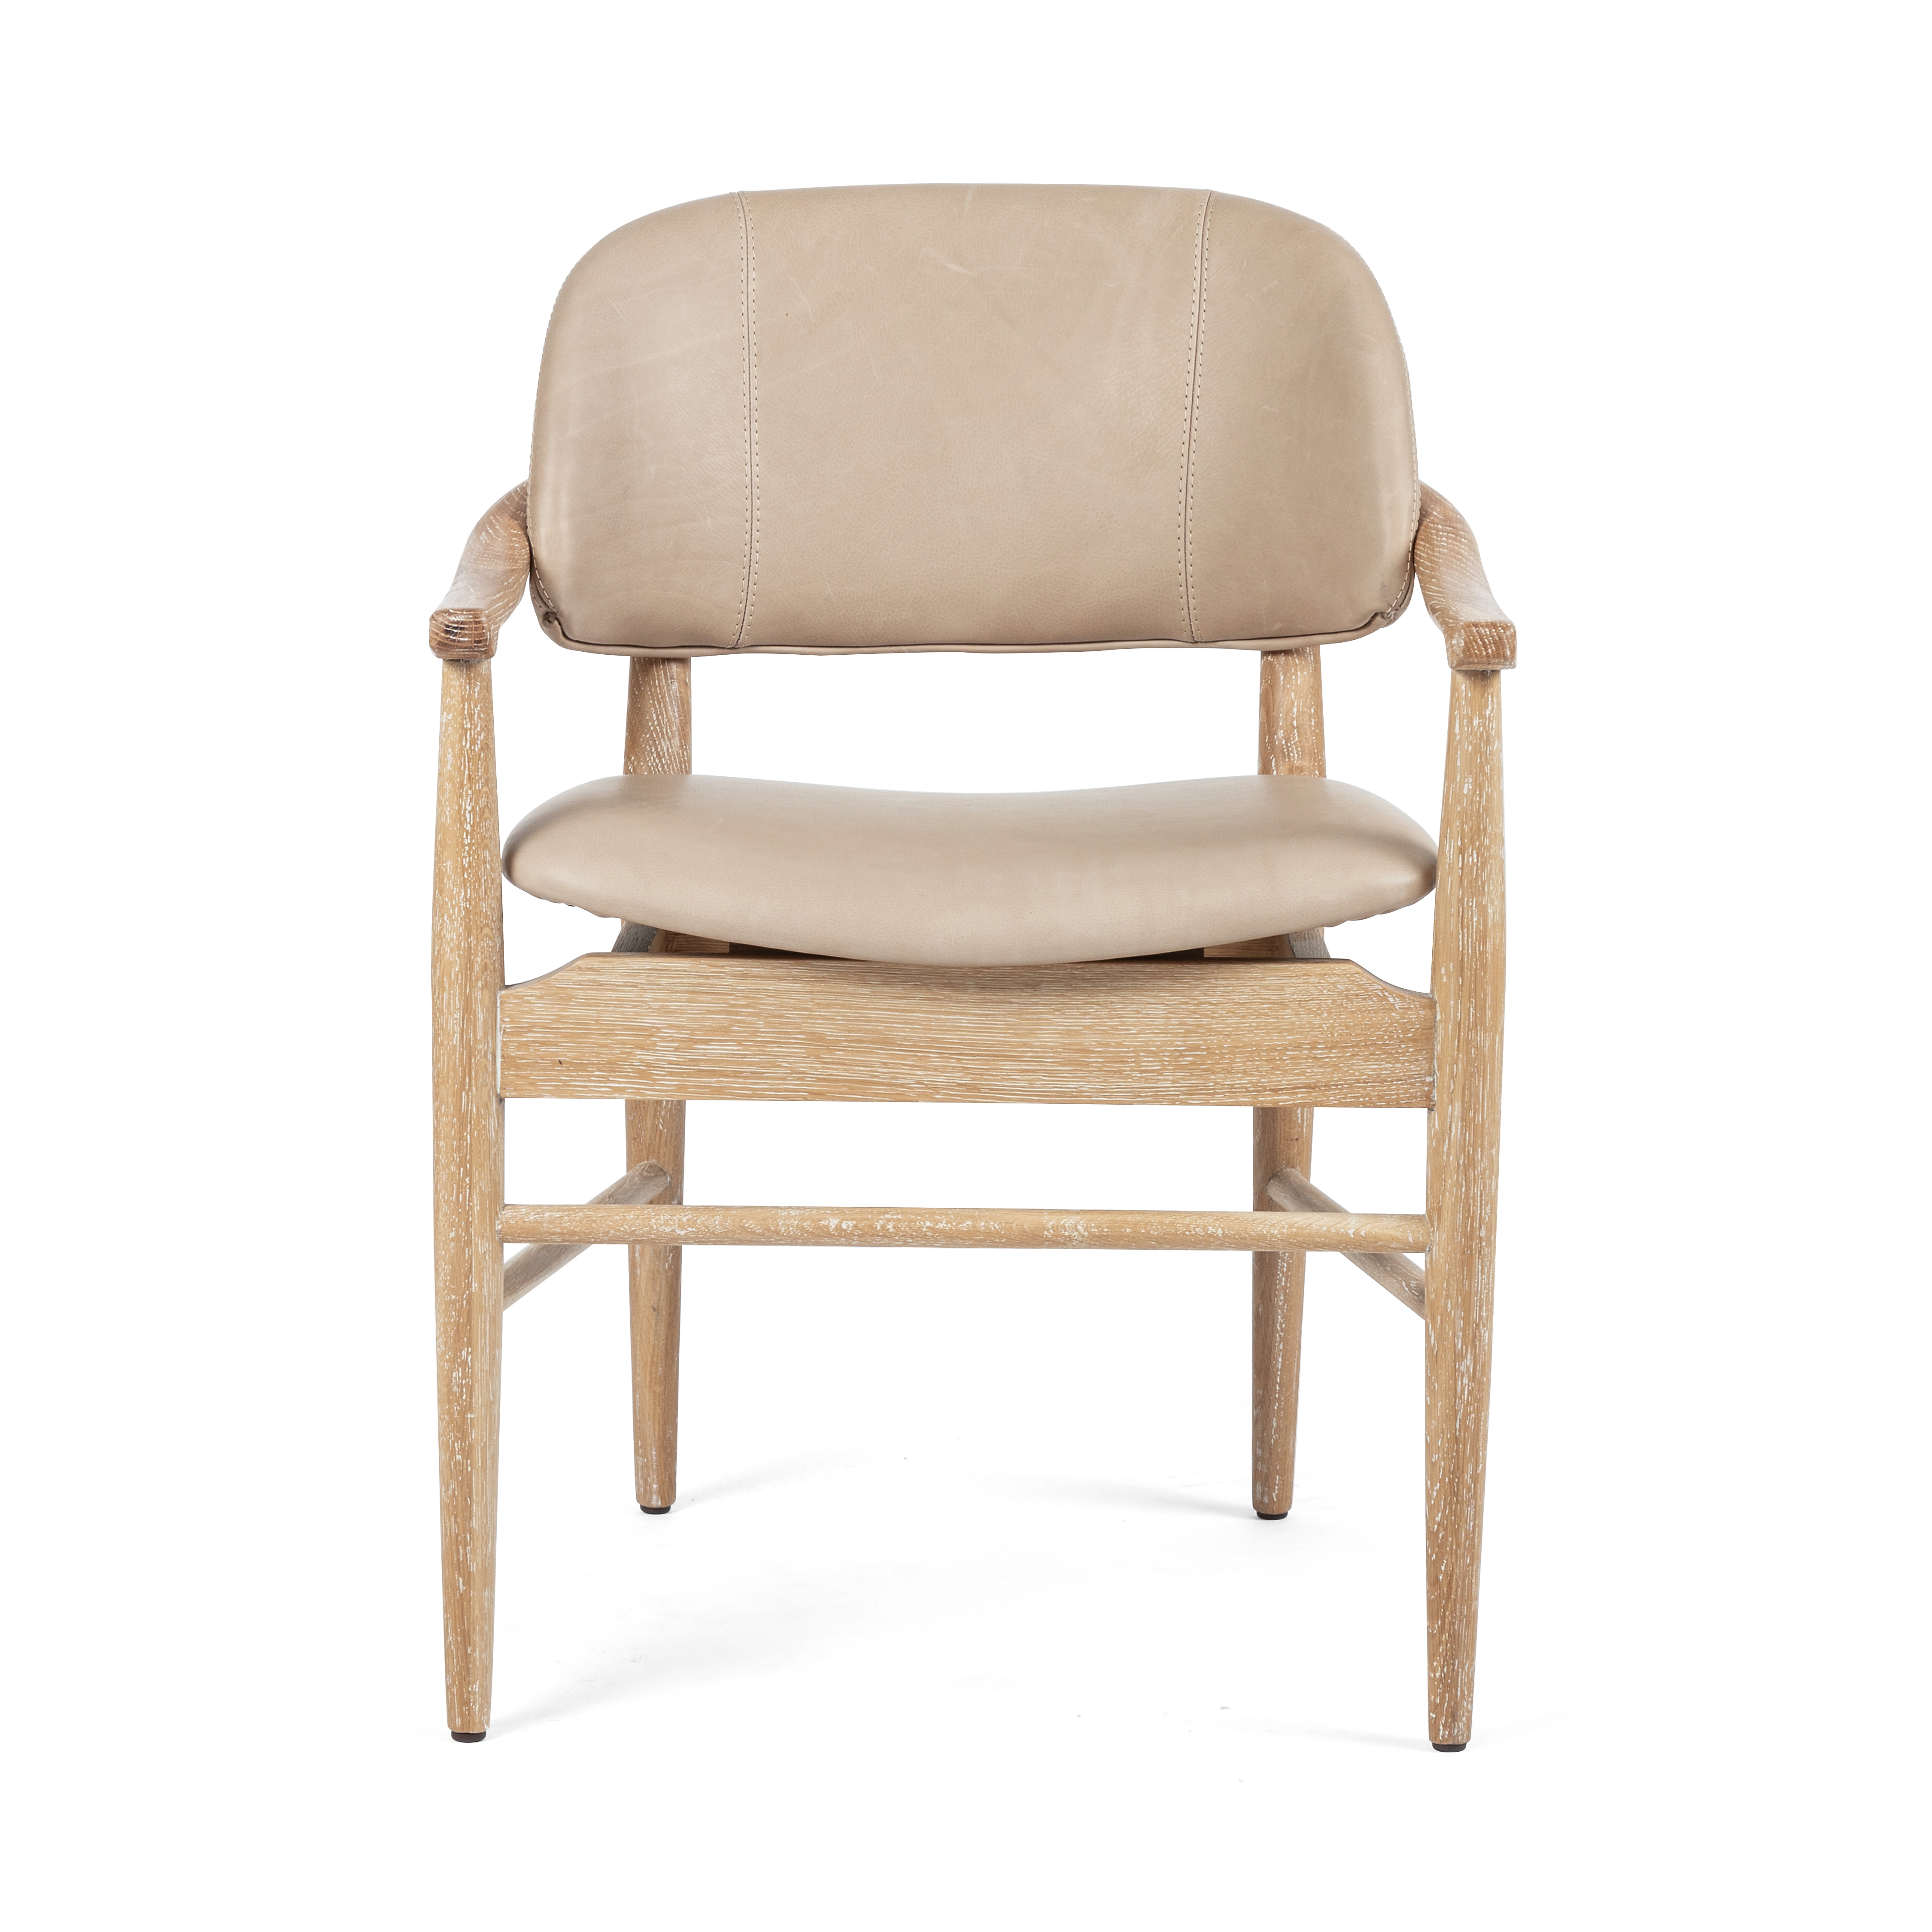 Josie Dining Chair-Vintage Whitewash Ash - Image 2